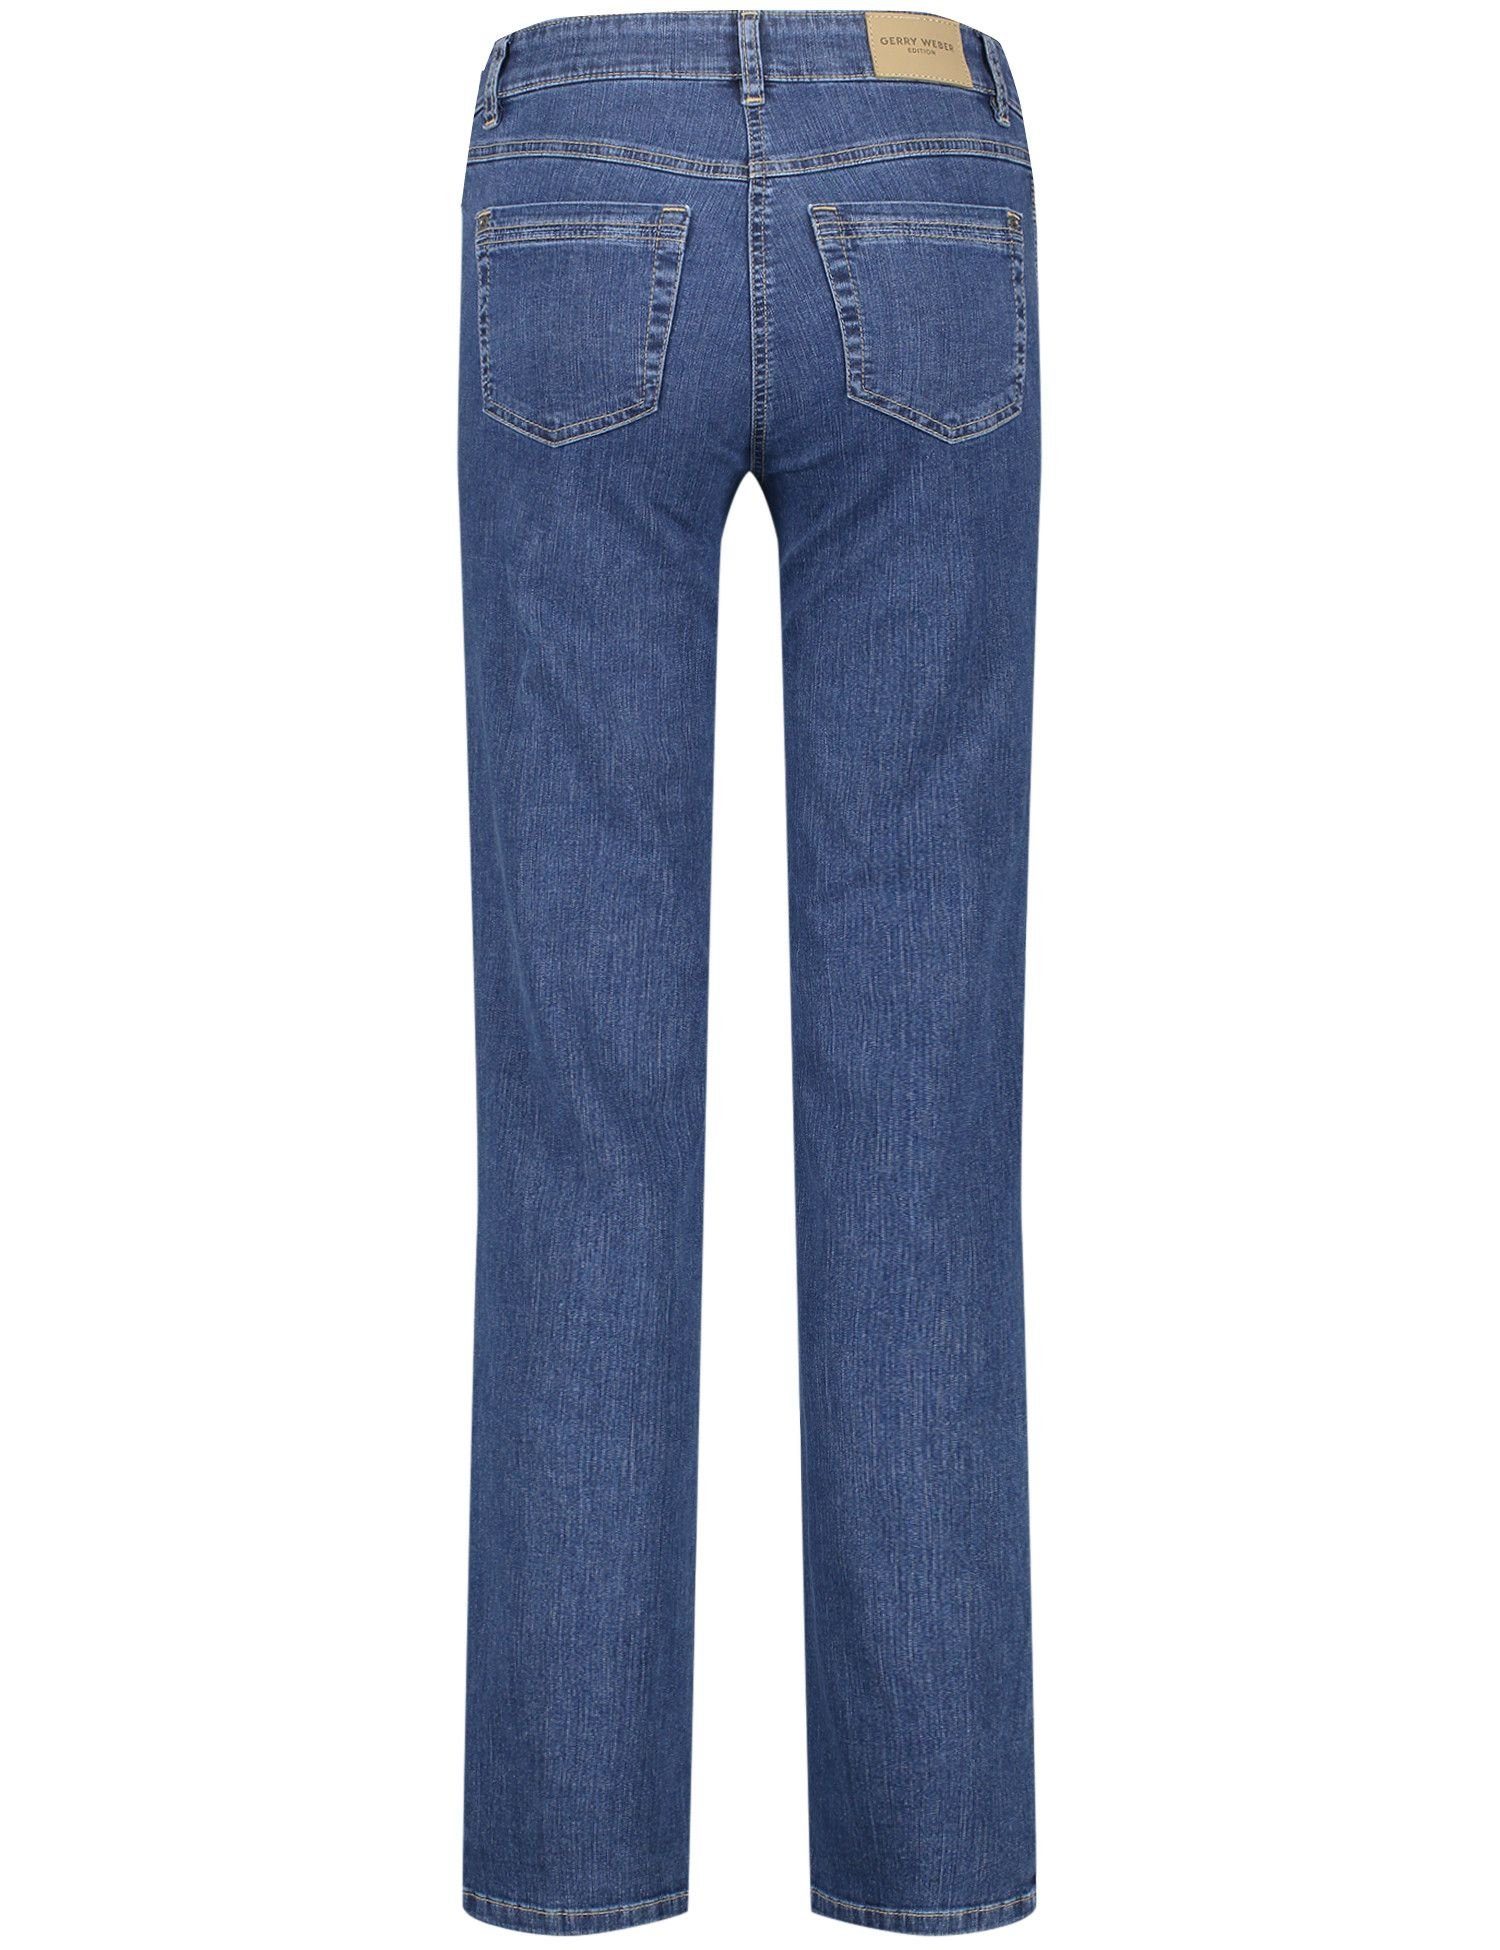 GERRY WEBER 5-Pocket-Jeans 87300 BLUE DENIM